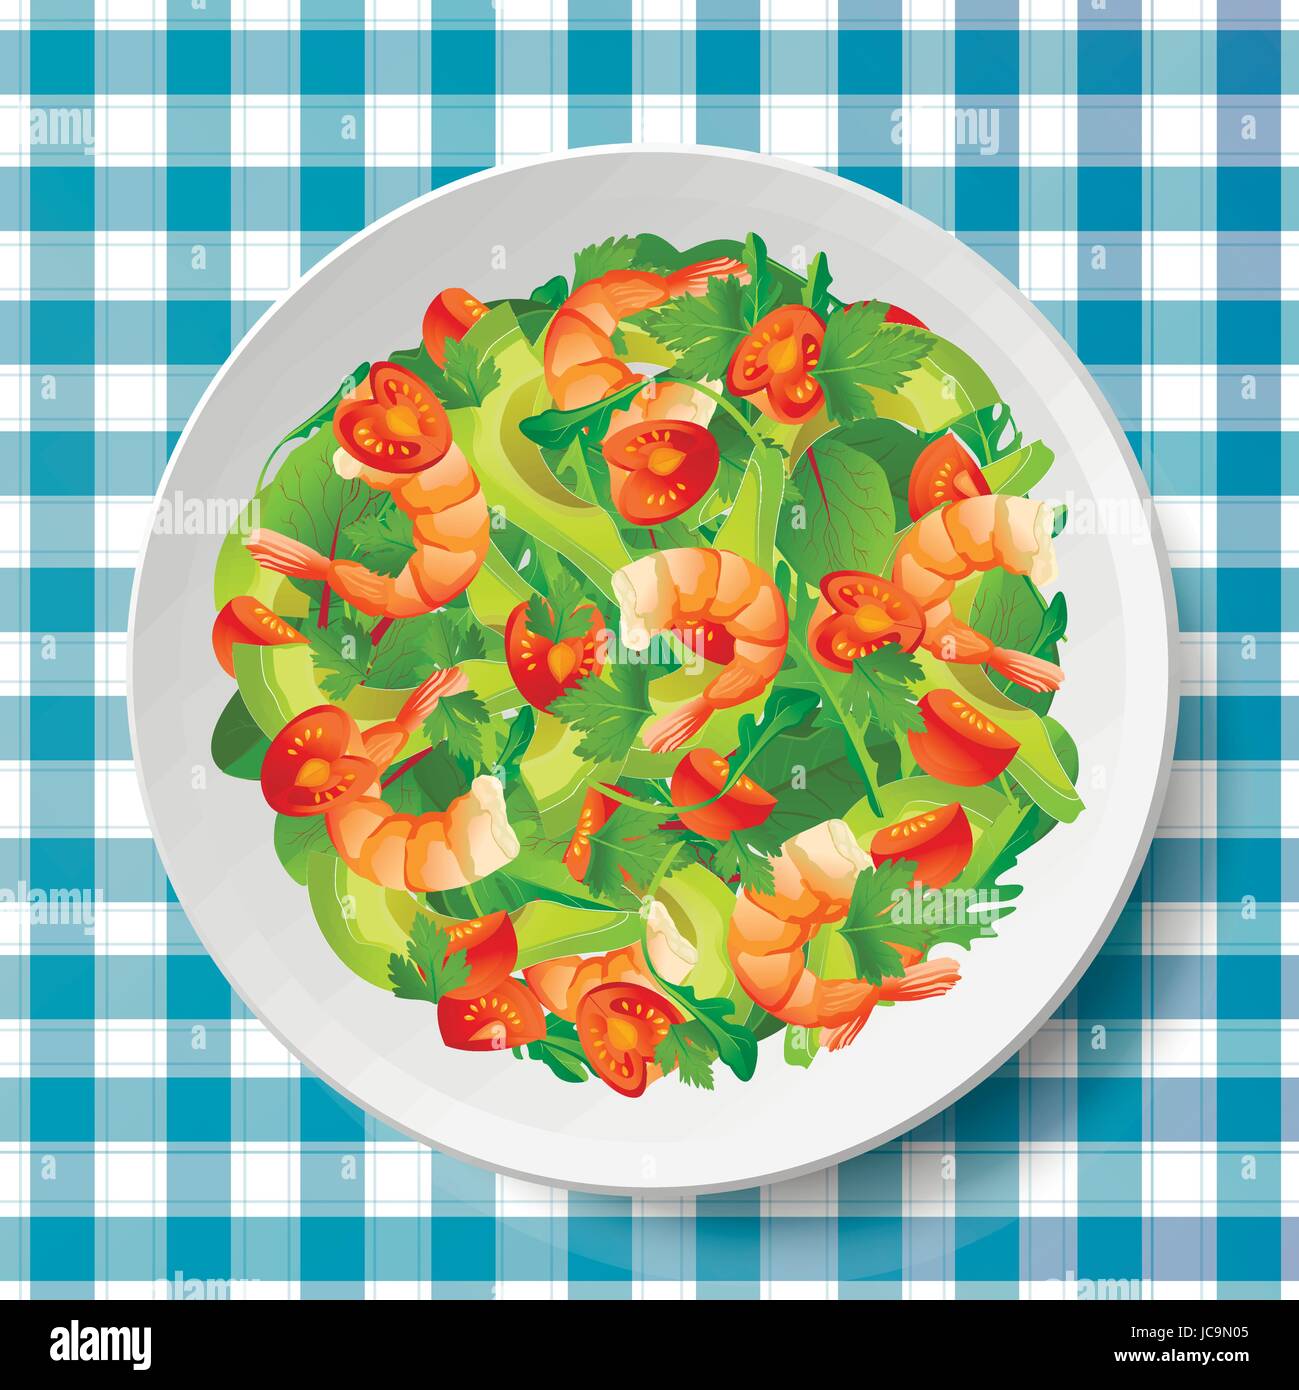 Salade aux crevettes, avocat, tomate fraîche, de roquette ou rucola, roquette, épinards, feuilles de mangold sur la plaque ou le plat sur nappe bleu-blanc. B Illustration de Vecteur